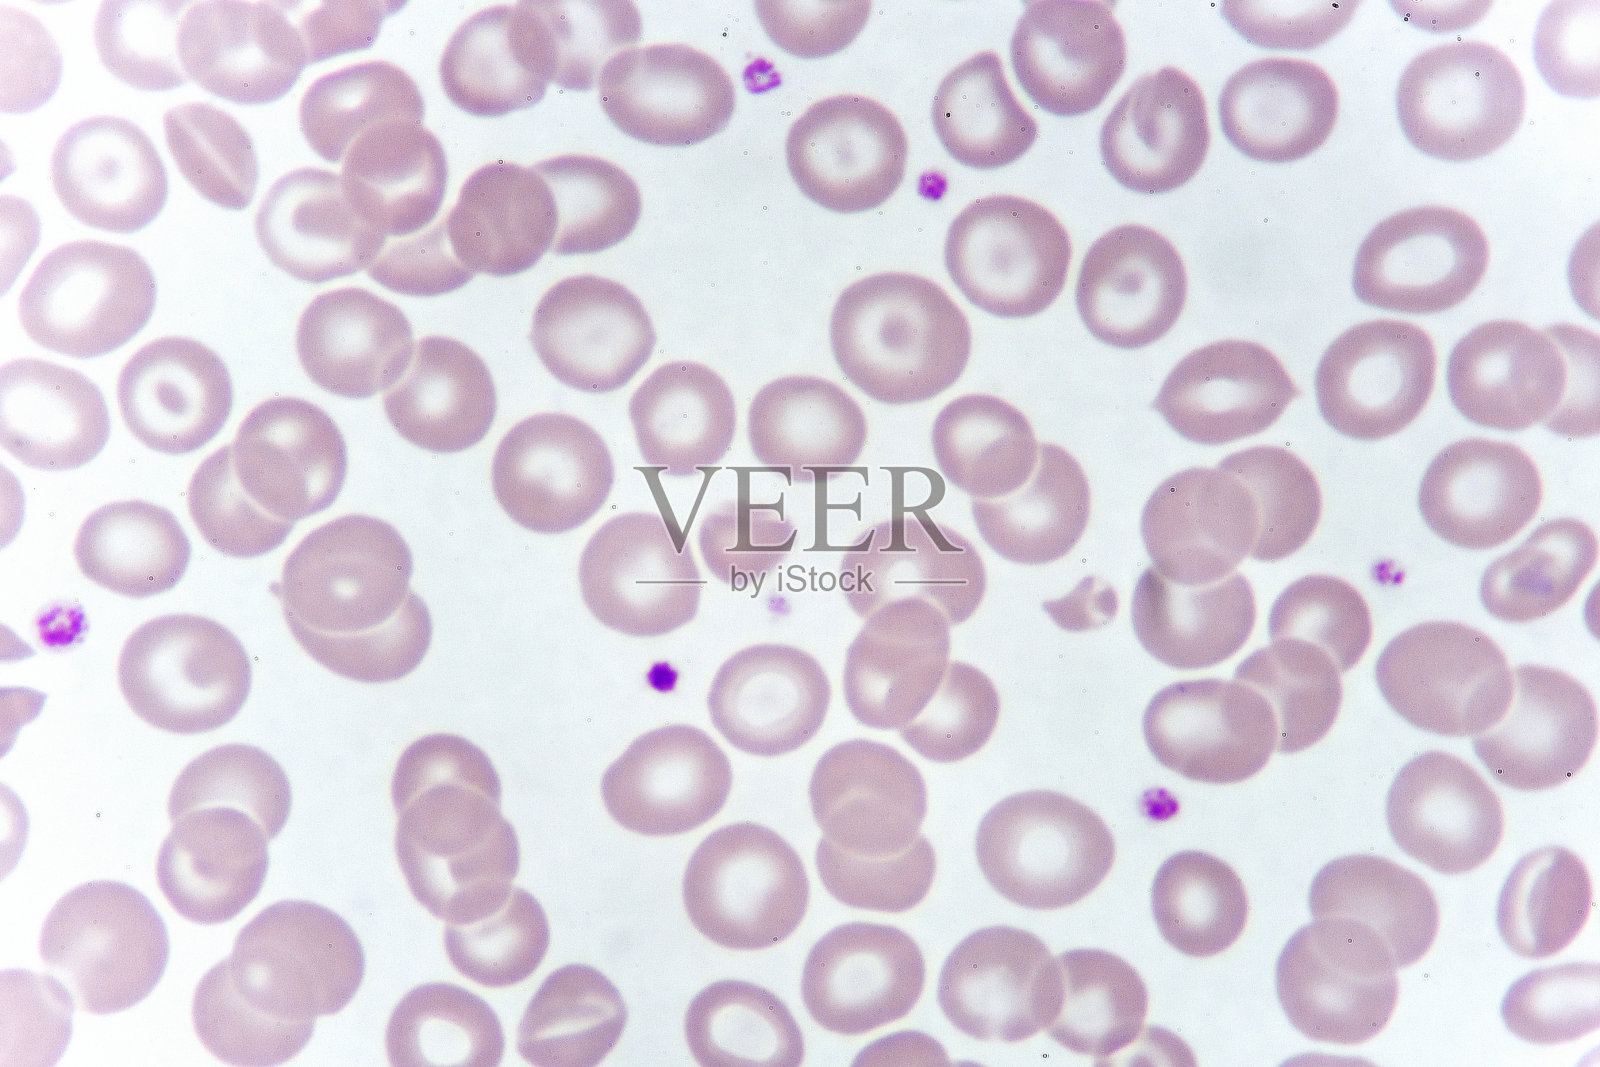 针对异常红细胞的细胞照片摄影图片